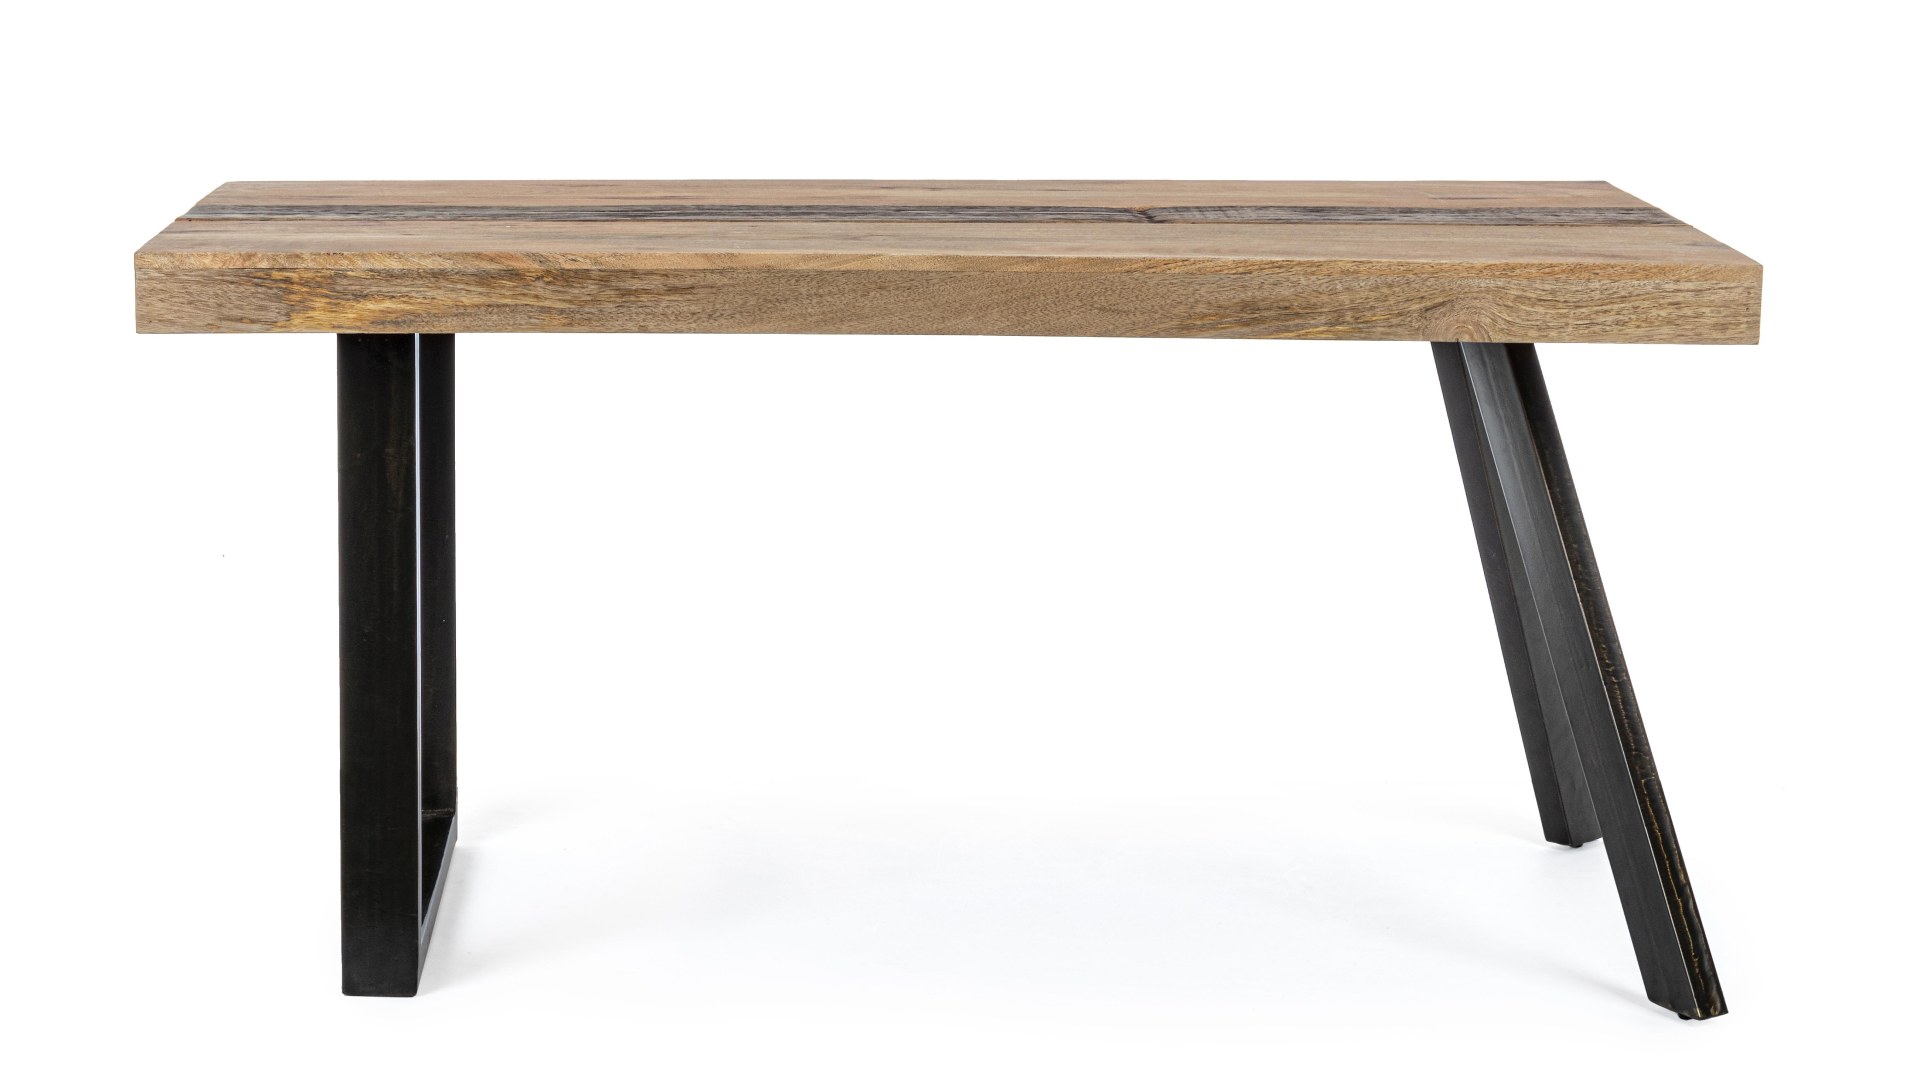 Der Esstisch Manchester überzeugt mit seinem klassischem Design gefertigt wurde er aus Mangoholz, welches einen natürlichen Farbton besitzt. Das Gestell des Tisches ist aus Metall und ist Schwarz. Der Tisch besitzt eine Breite von 160 cm.